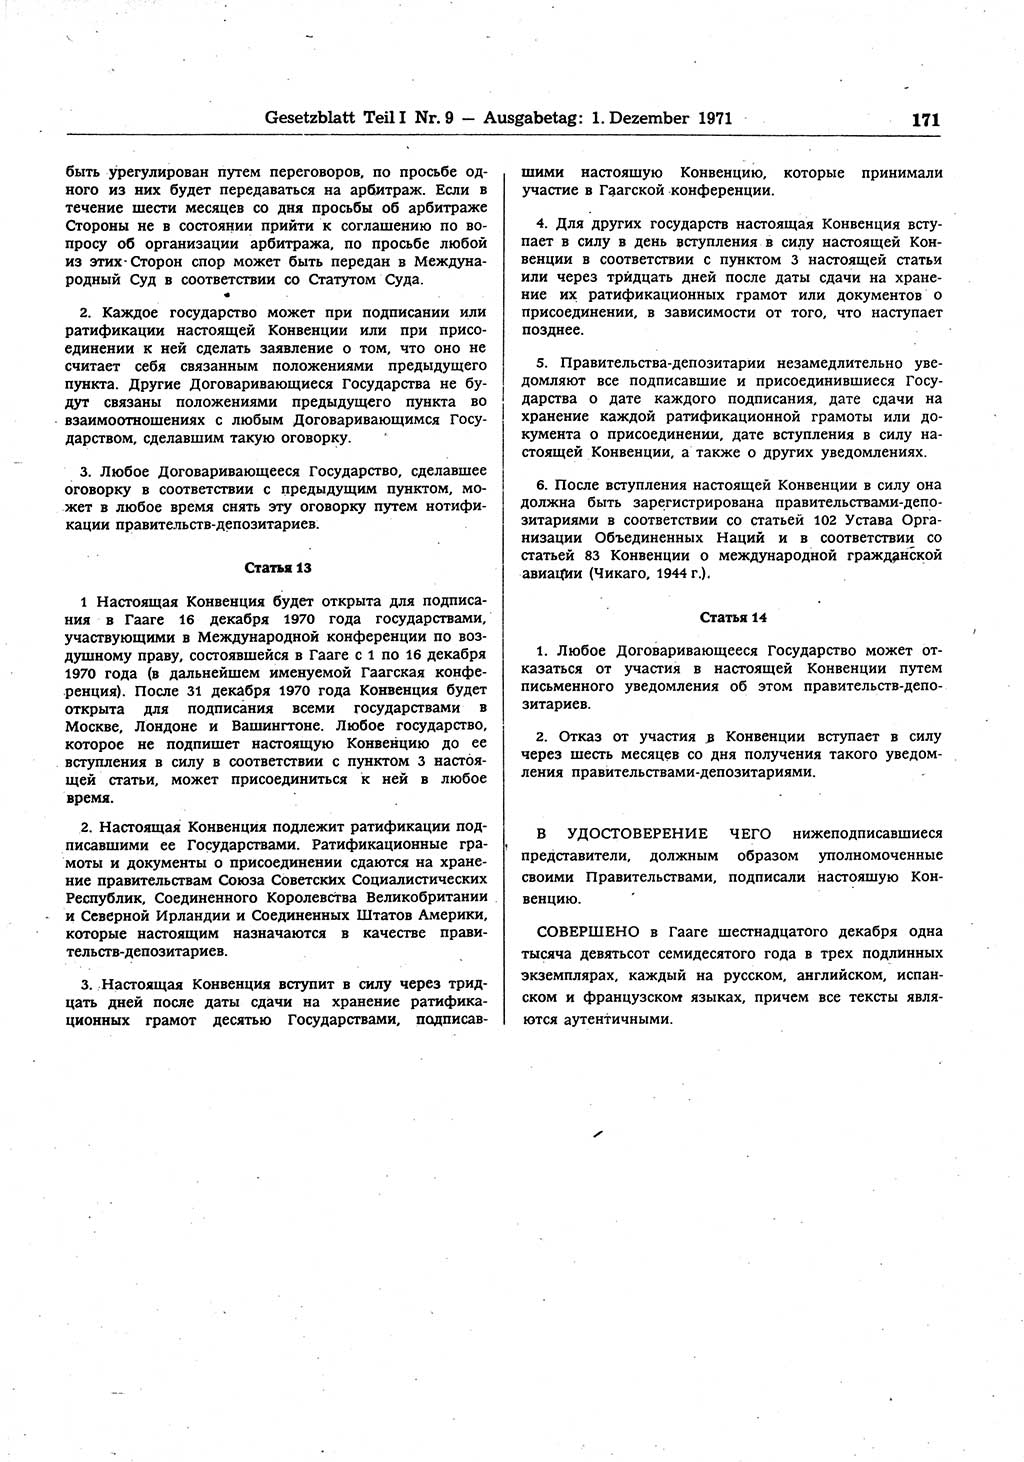 Gesetzblatt (GBl.) der Deutschen Demokratischen Republik (DDR) Teil Ⅰ 1971, Seite 171 (GBl. DDR Ⅰ 1971, S. 171)